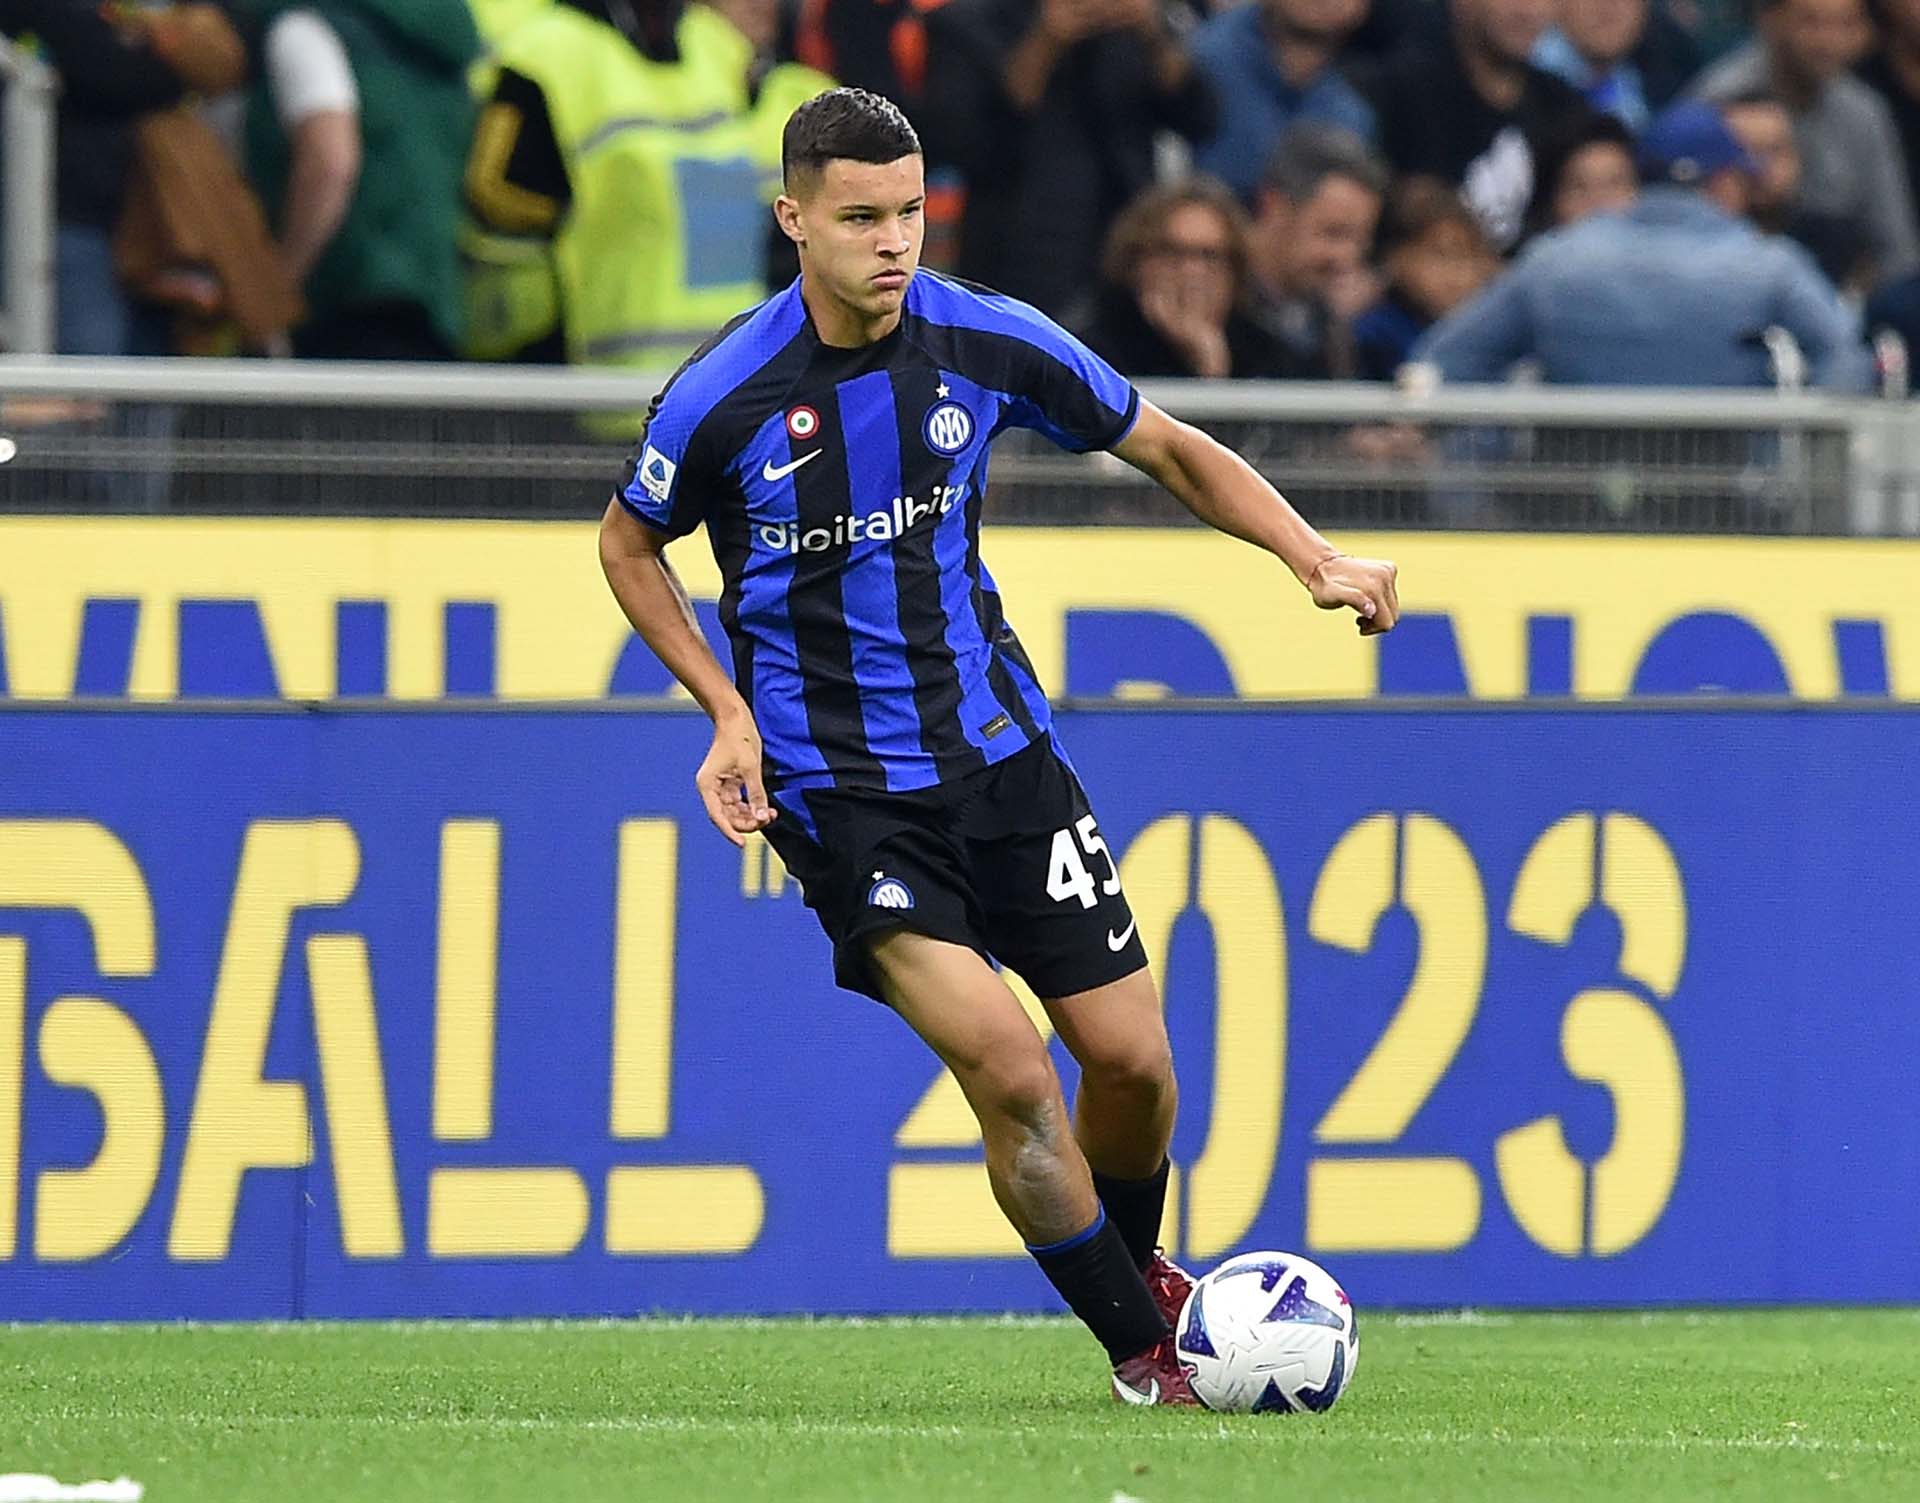 Con 18 años, Valentín Carboni ya está en la consideración del primer equipo de Inter (Foto: Giuseppe Bellini/Getty Images)